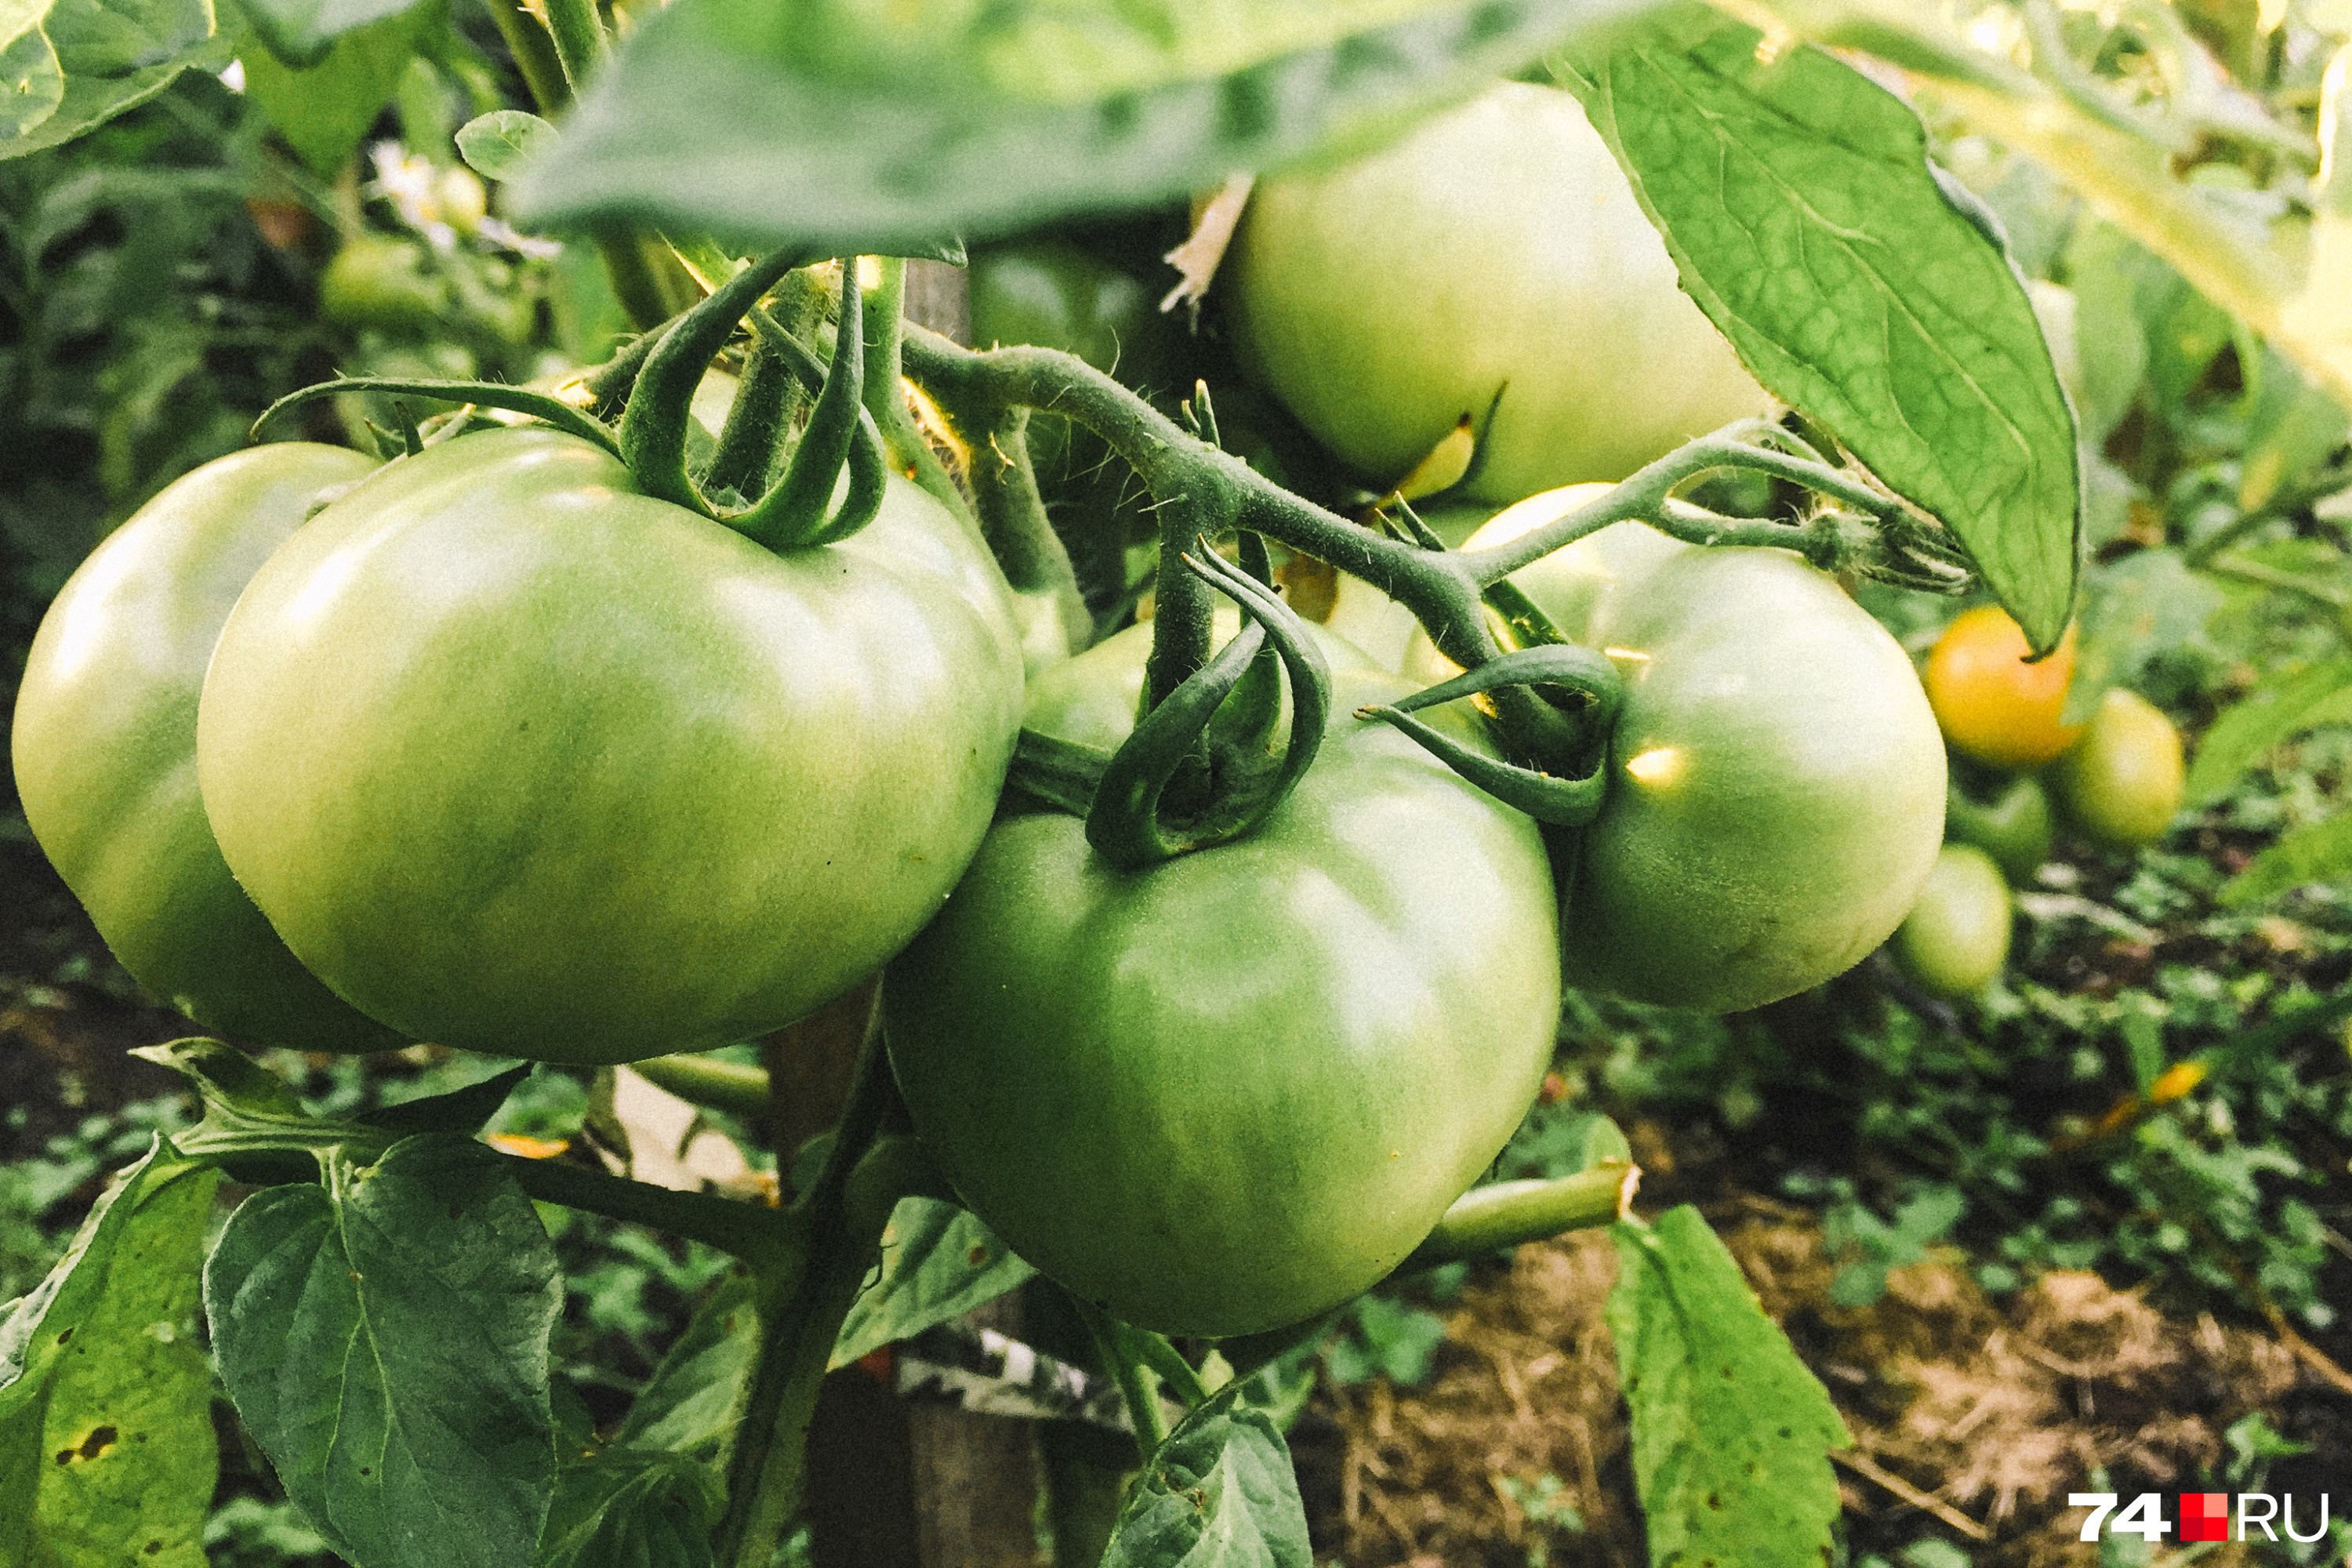 Как правильно выращивать помидоры, самые распространенные болезни томатов -22 июля 2021 - 45.ru